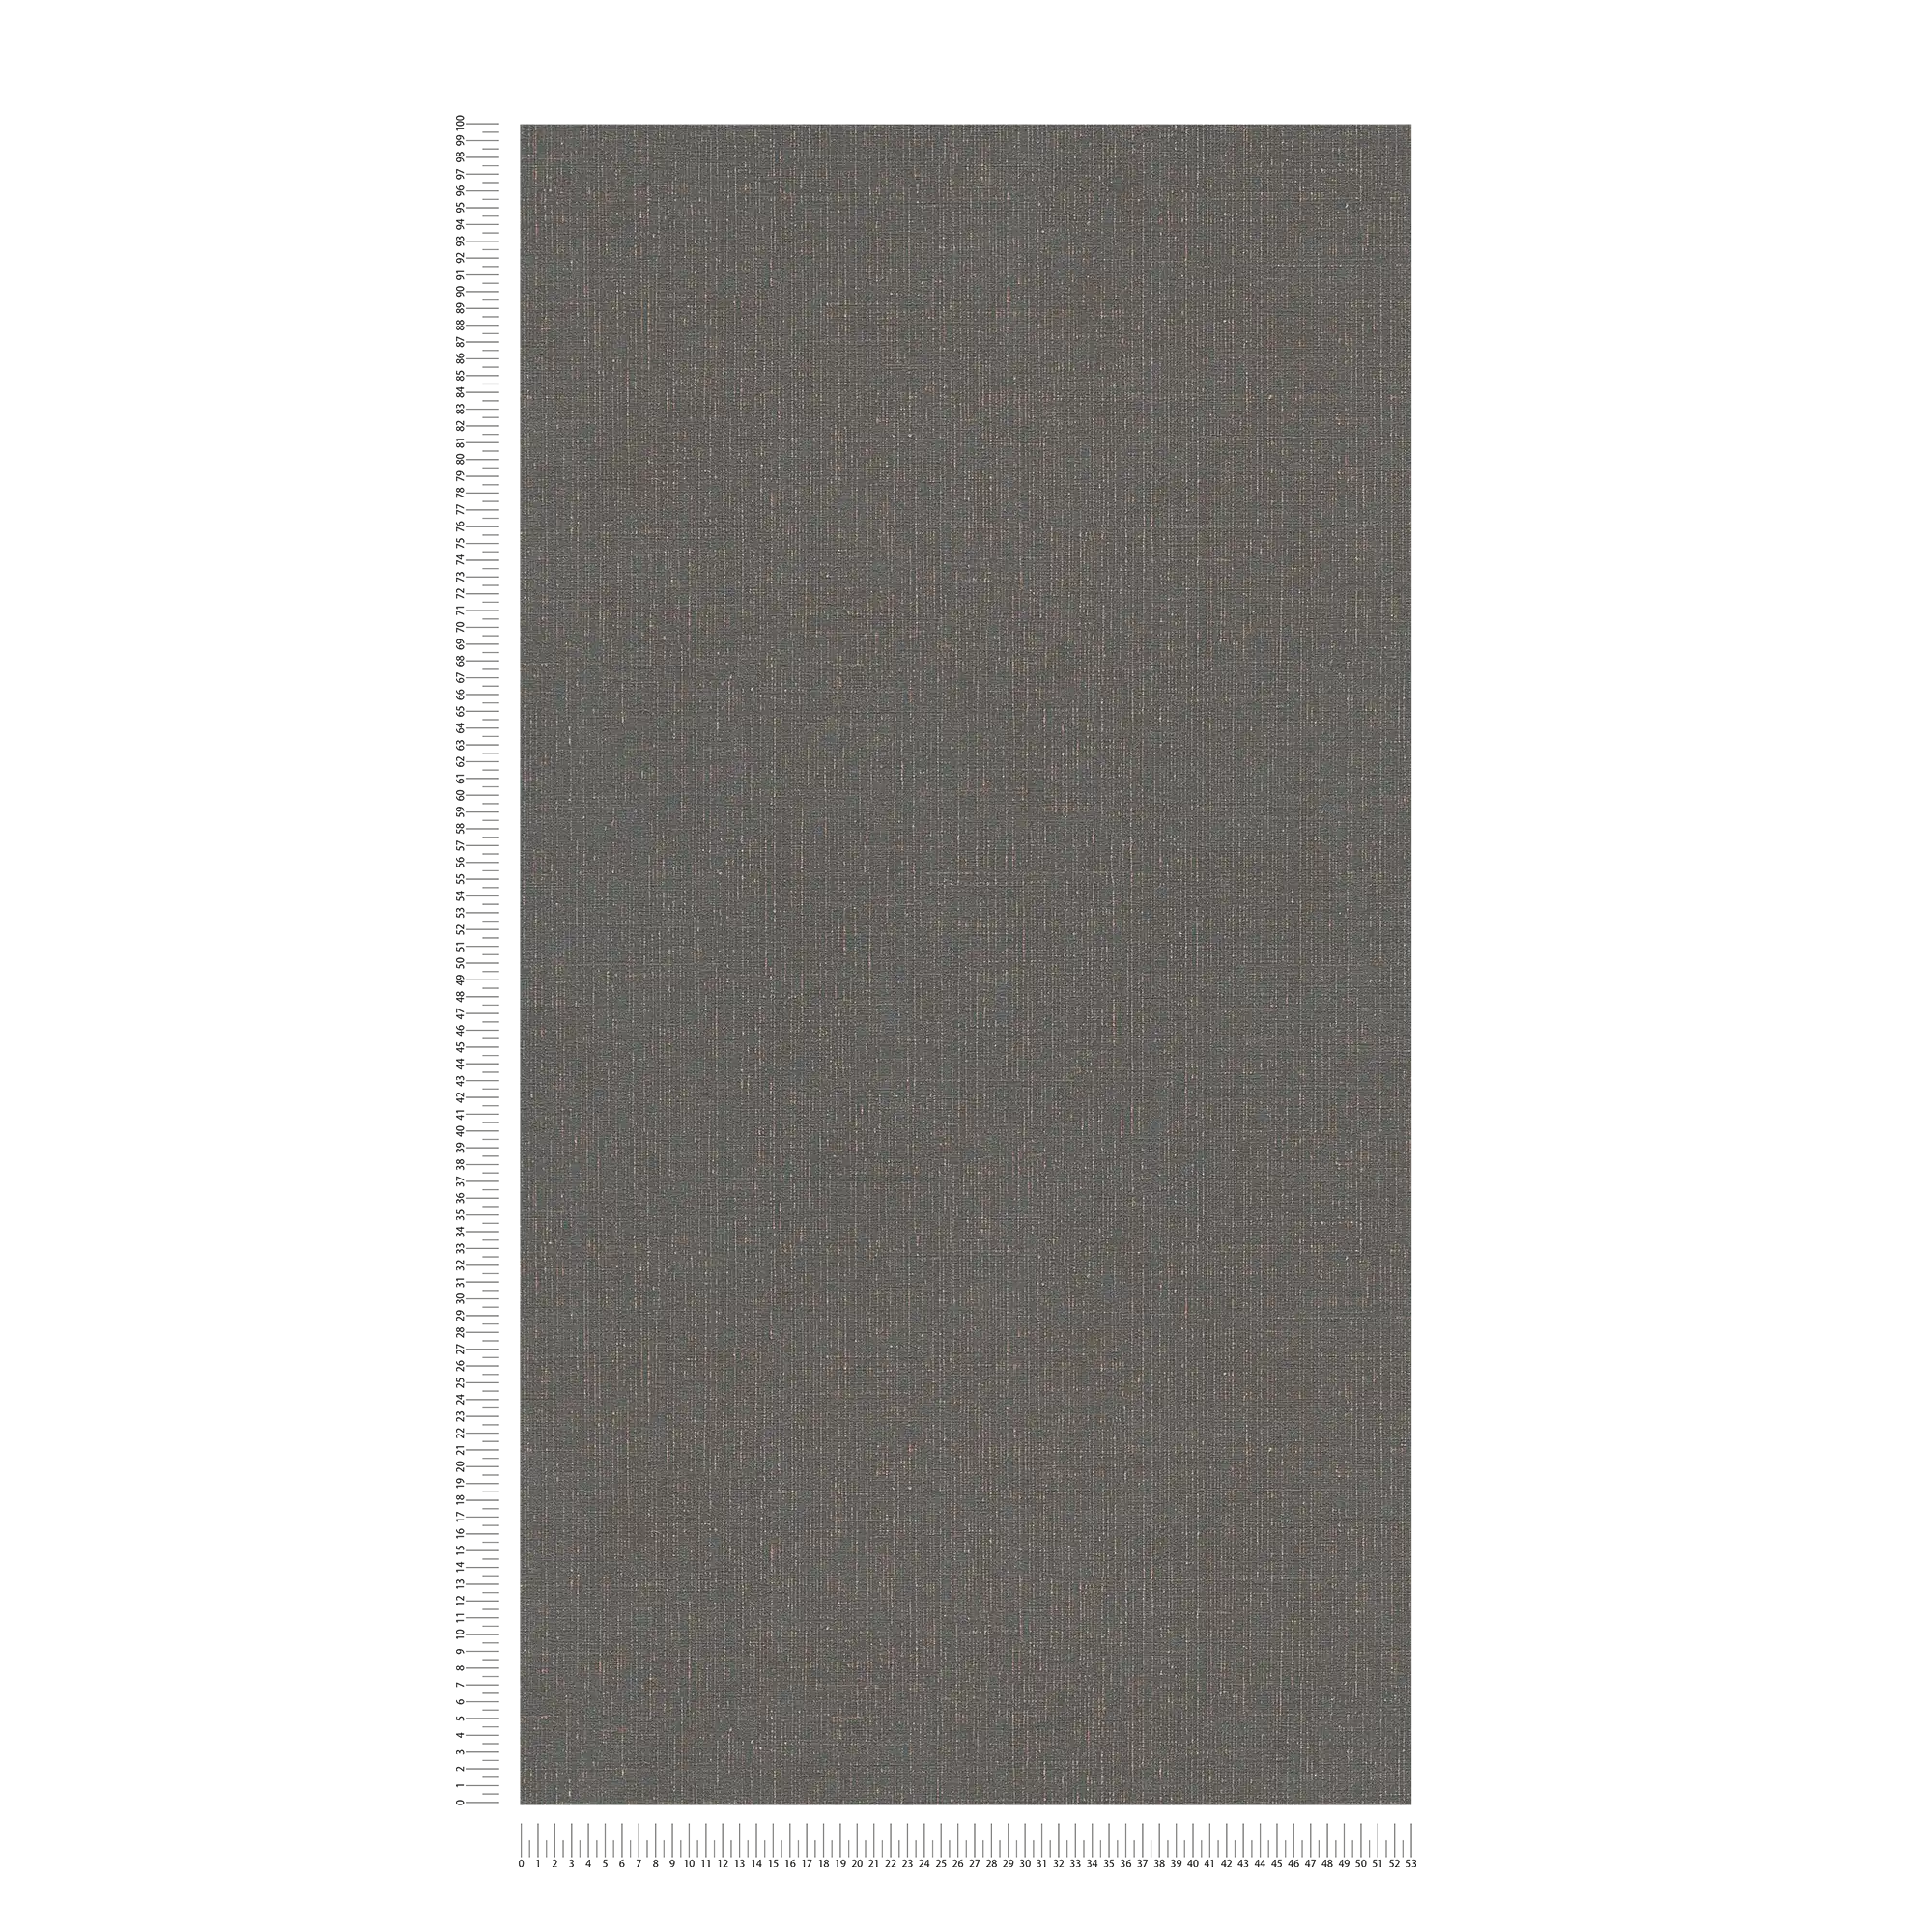             Papier peint aspect textile anthracite avec structure lin - noir, gris
        